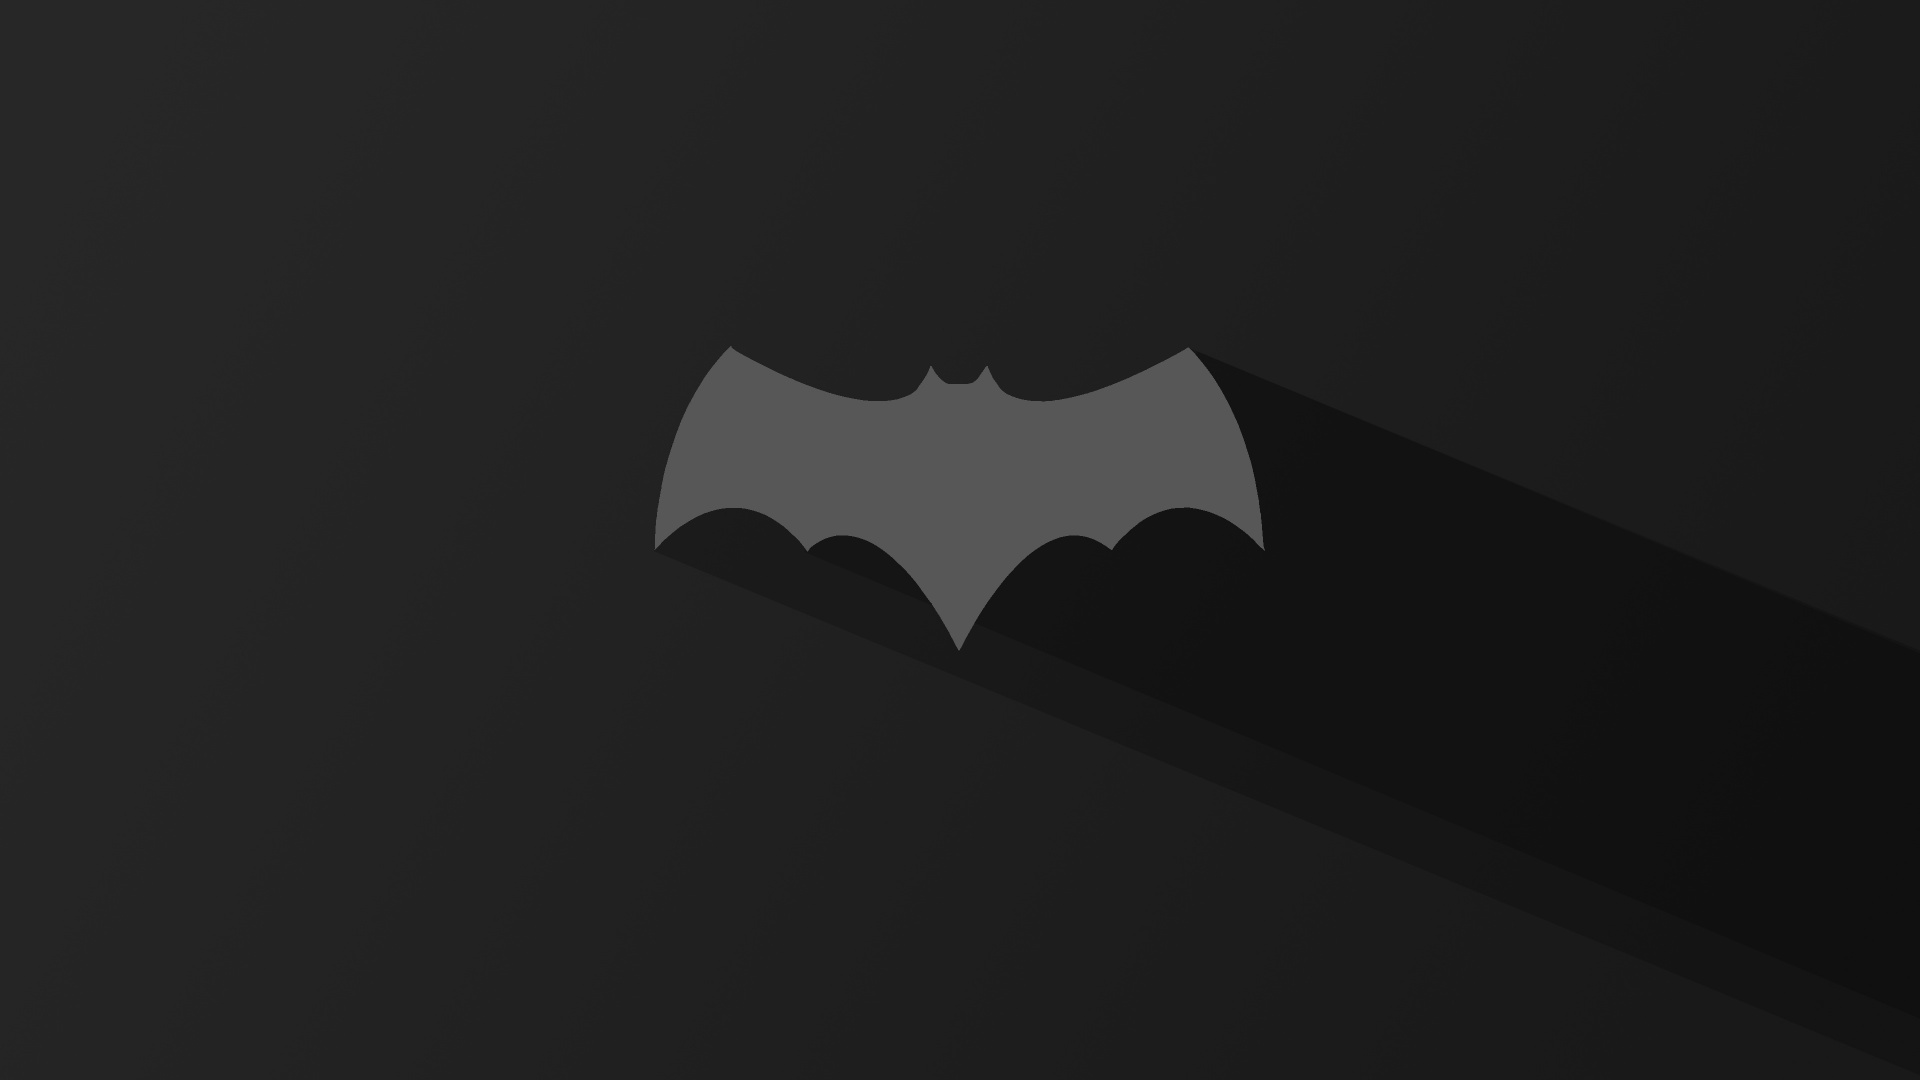 蝙蝠侠, 蝙蝠, 黑色的, 黑色和白色的, 单色模式 壁纸 1920x1080 允许